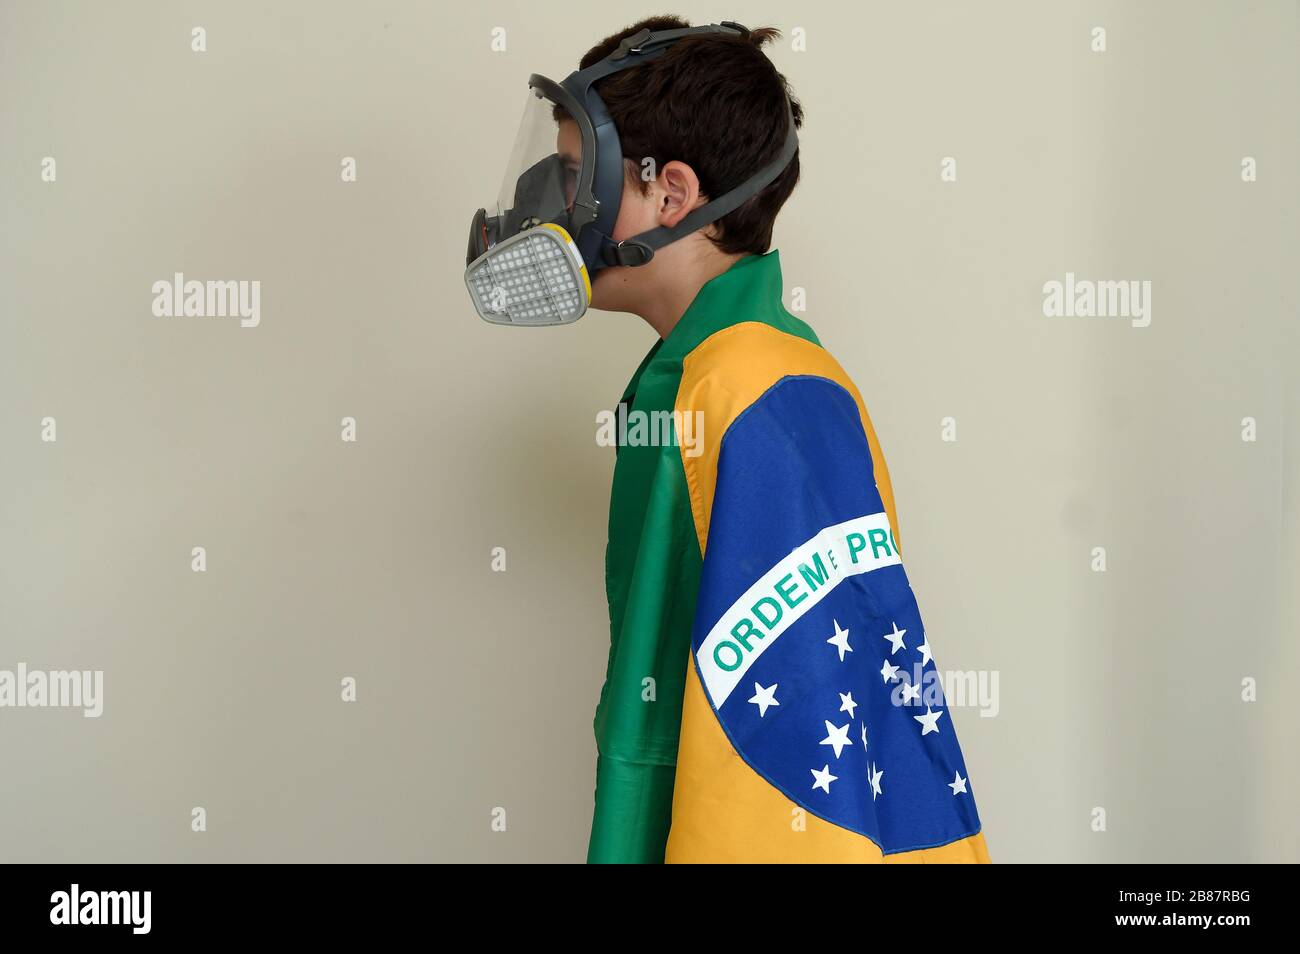 Río de Janeiro, Brasil, 20 de marzo de 2020. Niño con máscara de protección facial contra gases y olores envueltos en la bandera brasileña. Foto de stock